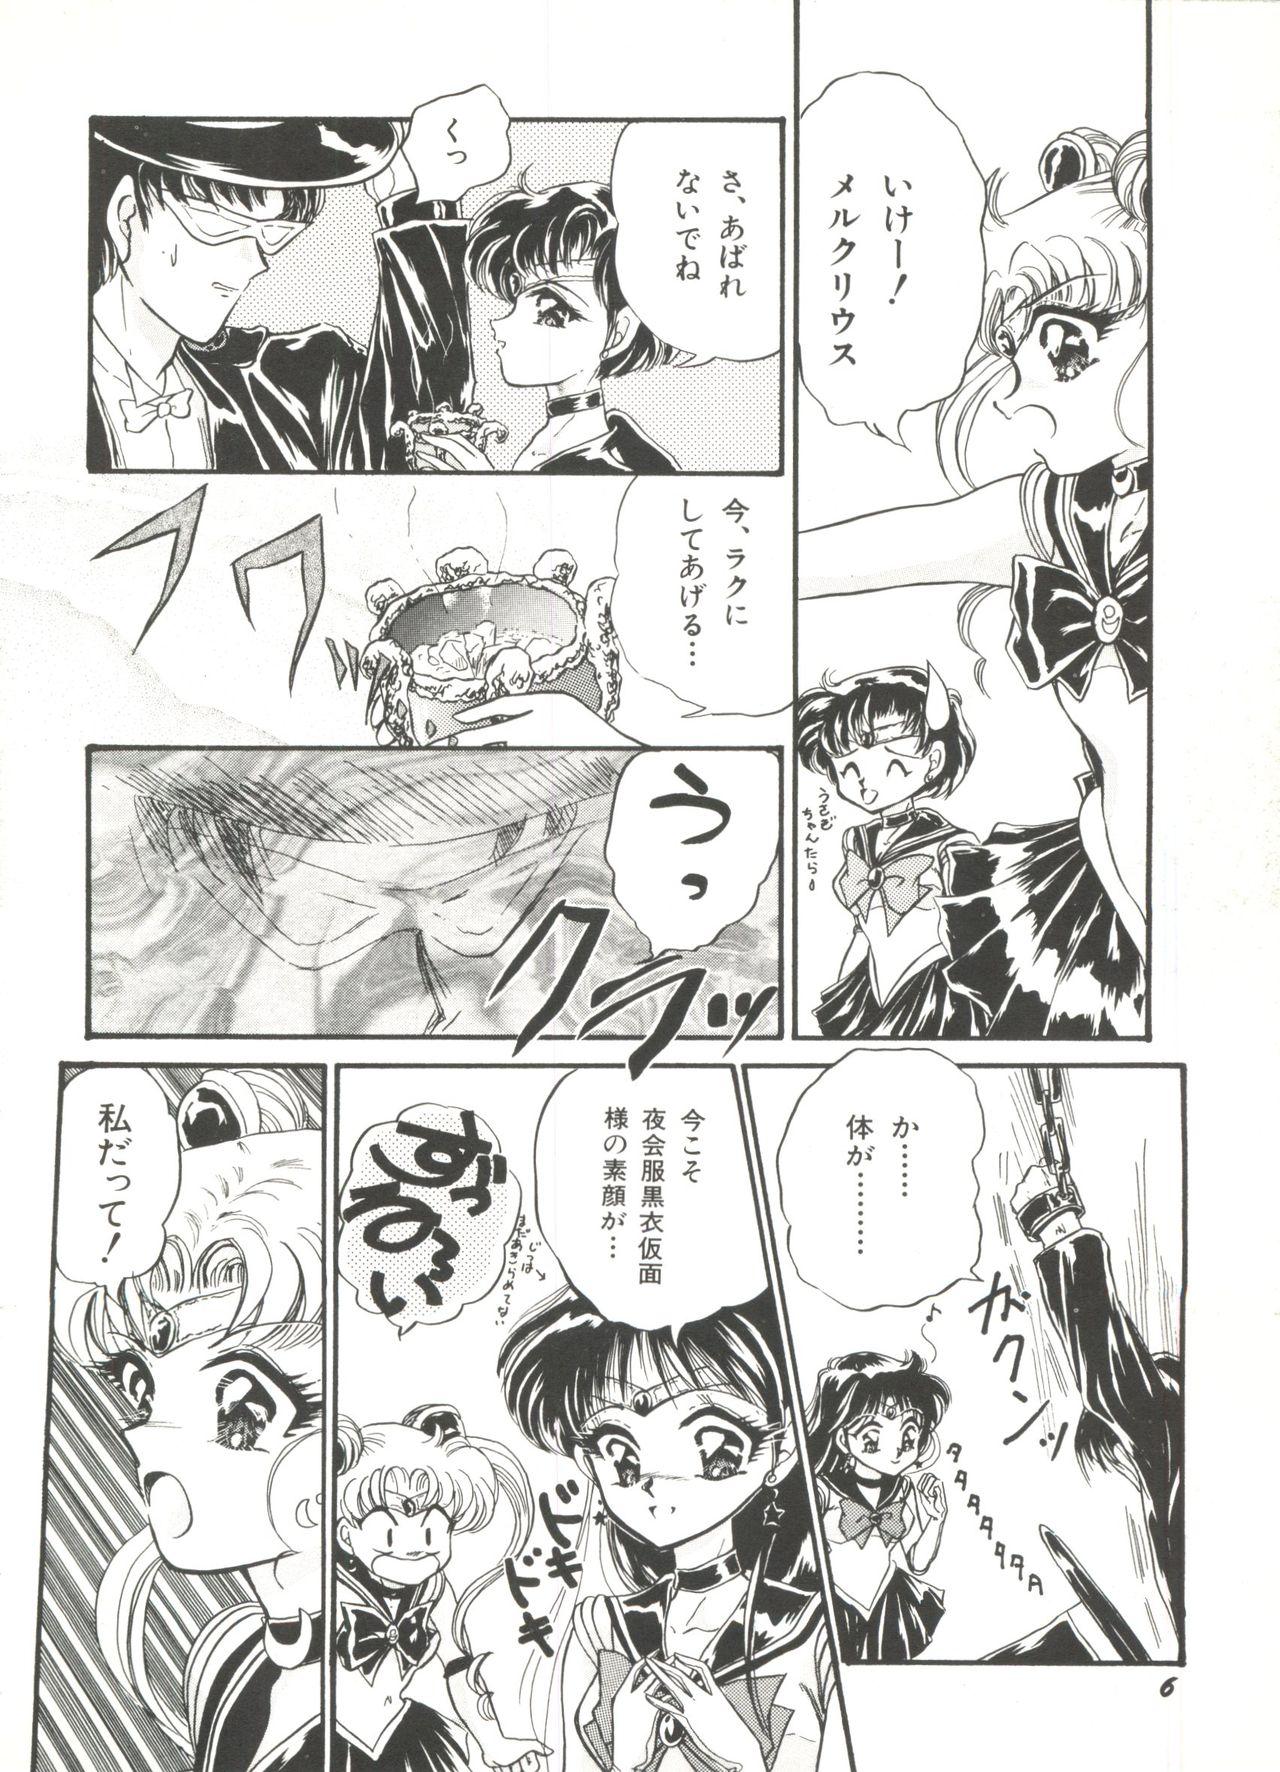 Eating Bishoujo Doujinshi Anthology 1 - Sailor moon Fatal fury Dutch - Page 8